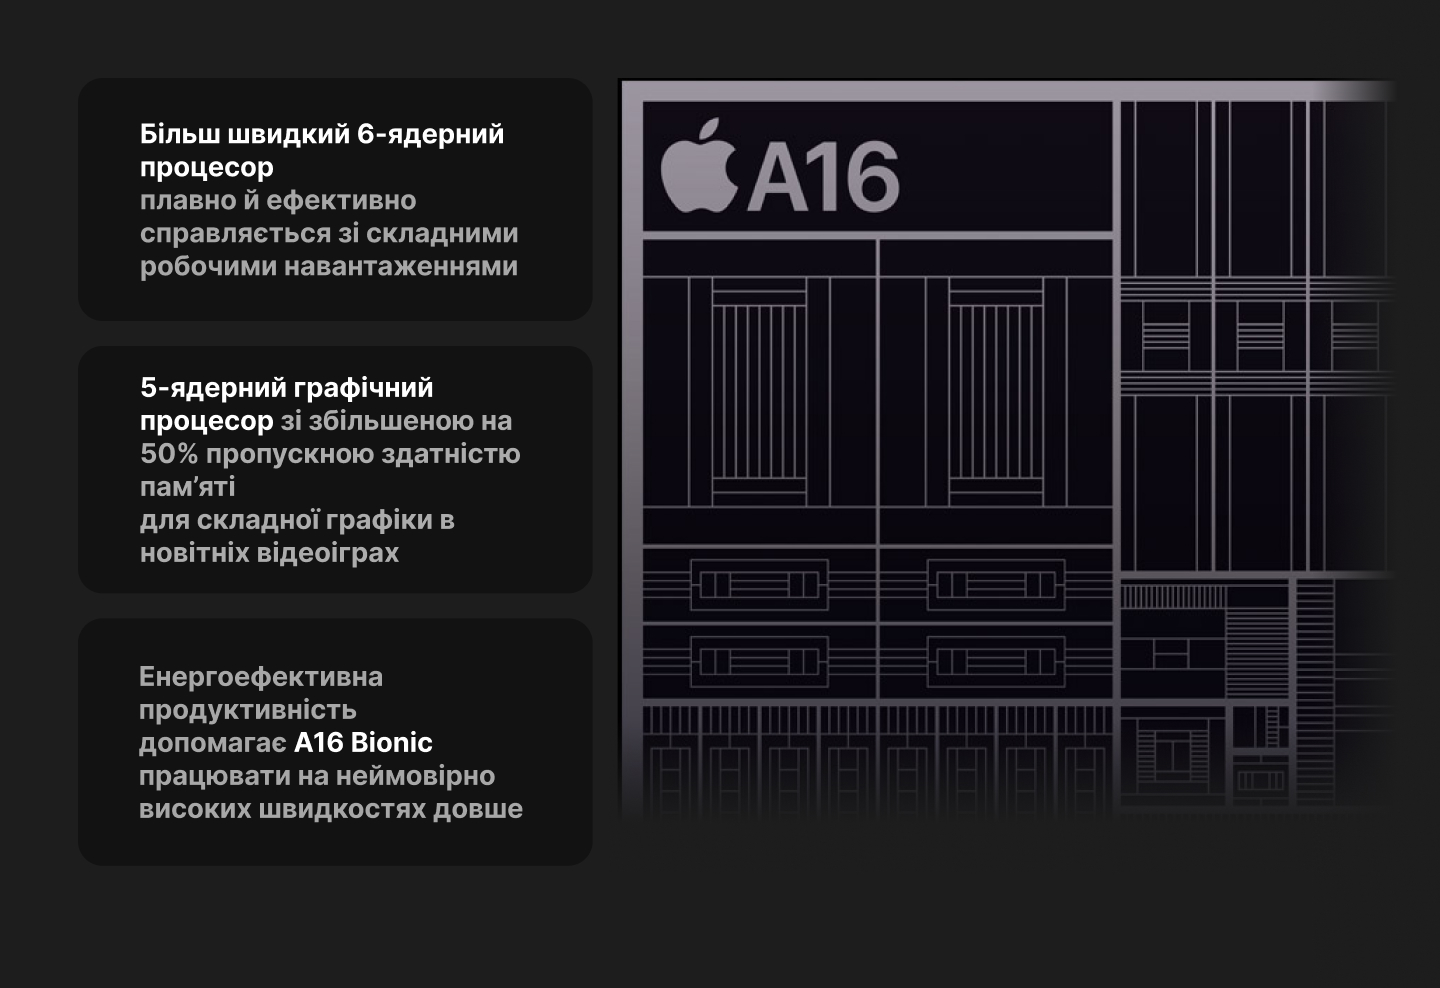 Apple iPhone 14 Pro 1TB (Silver) (e-Sim)